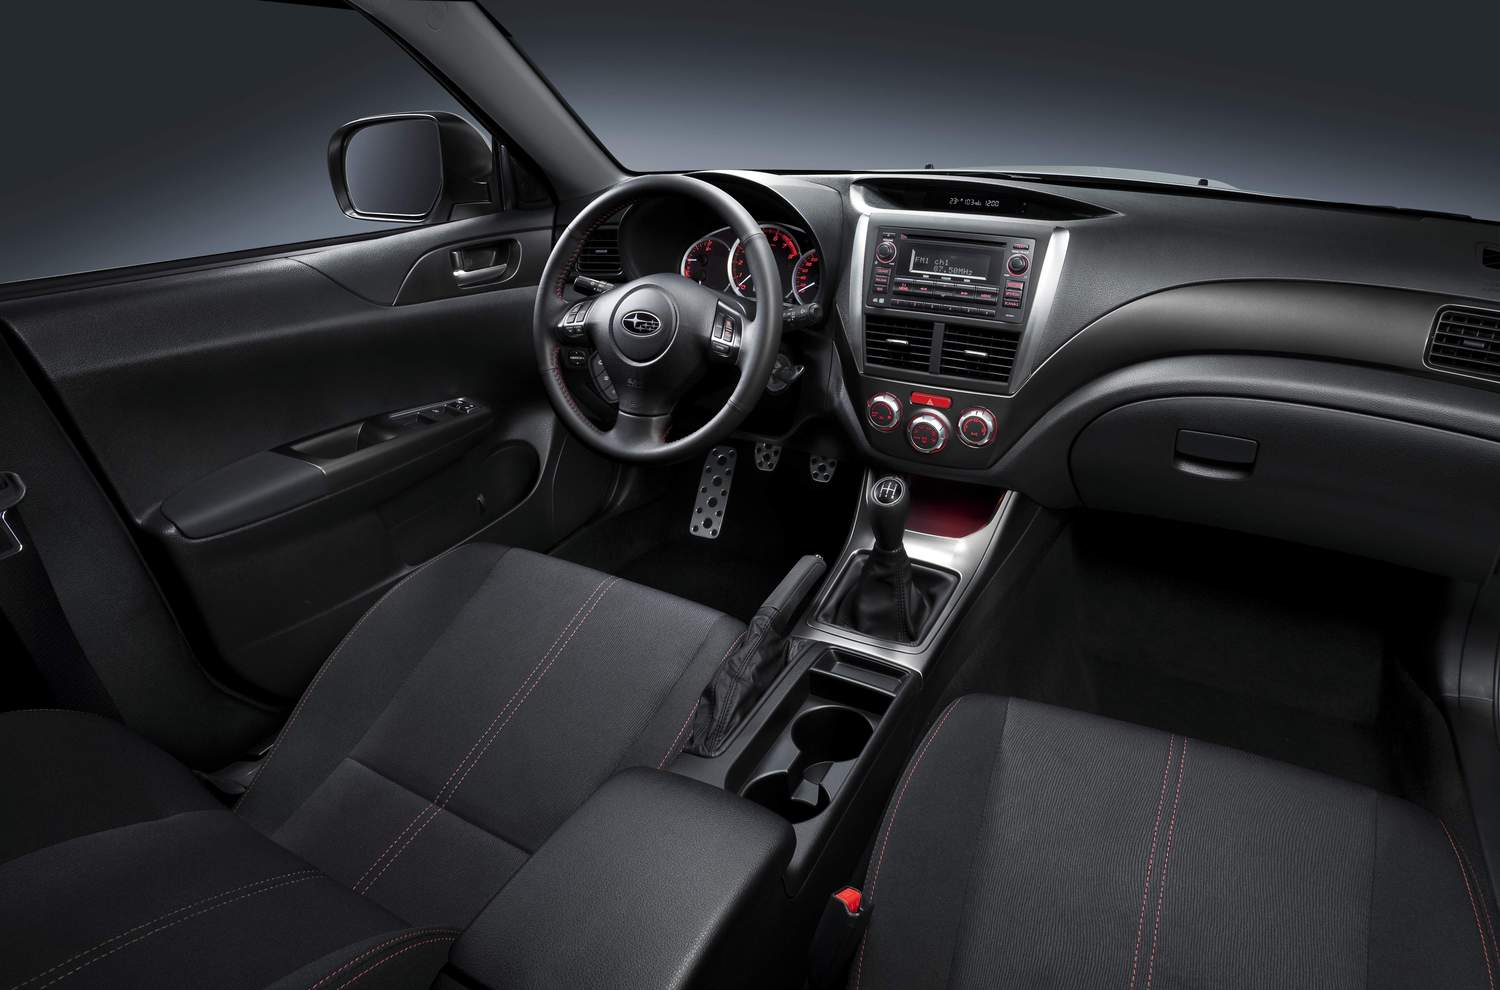 хэтчбек 5 дв. Subaru Impreza WRX 2011 - 2014г выпуска модификация 2.5 AT (224 л.с.) 4×4